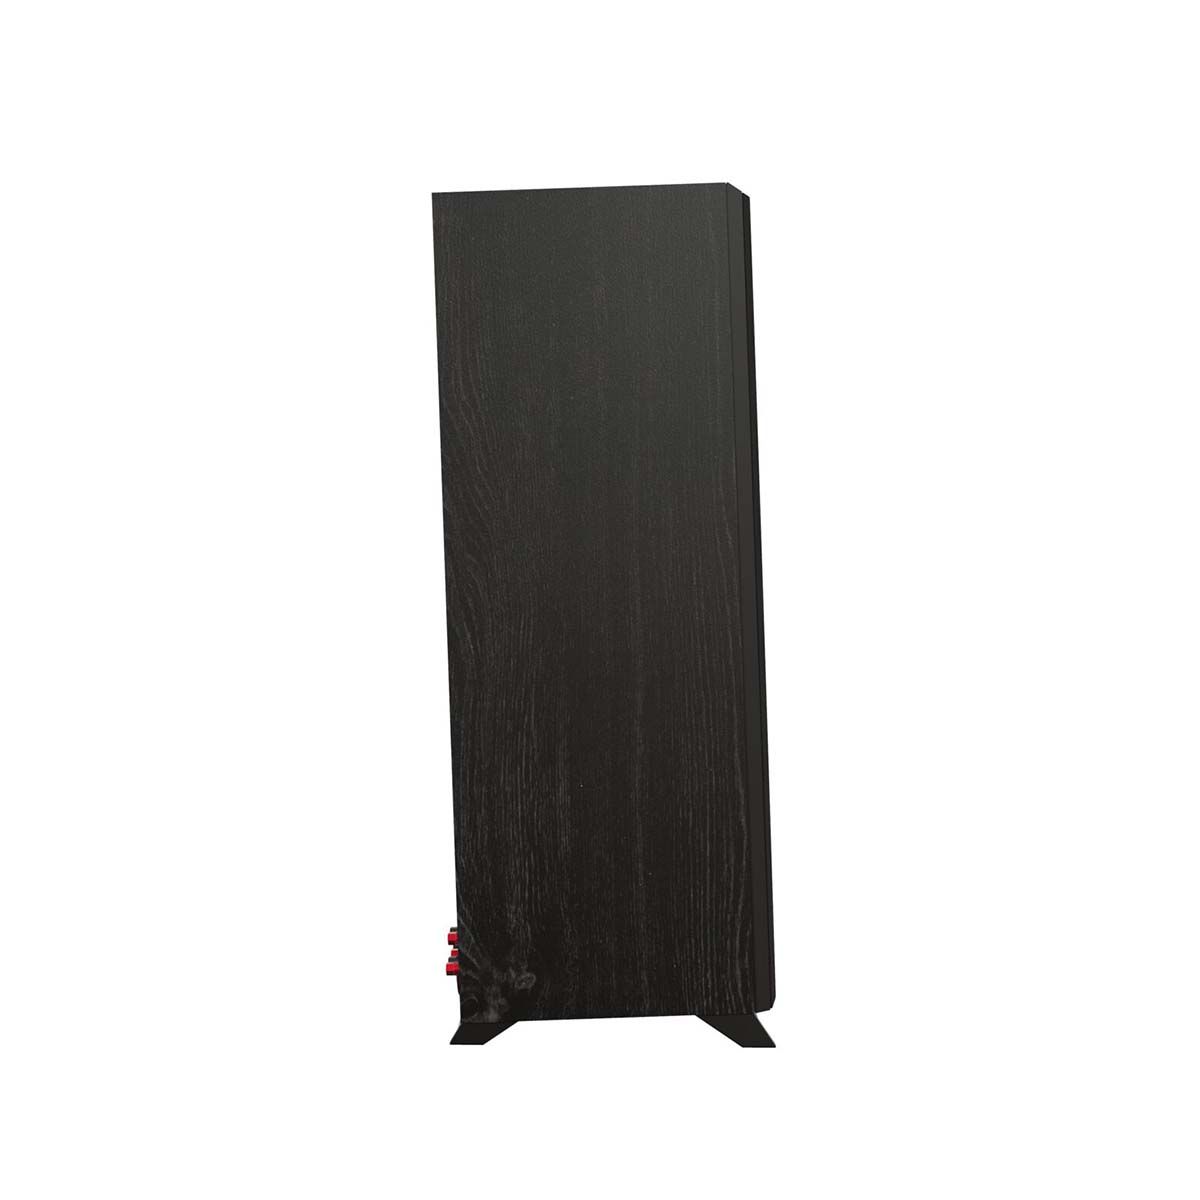 Klipsch RP-5000F II Floorstanding Speaker - Ebony - side view